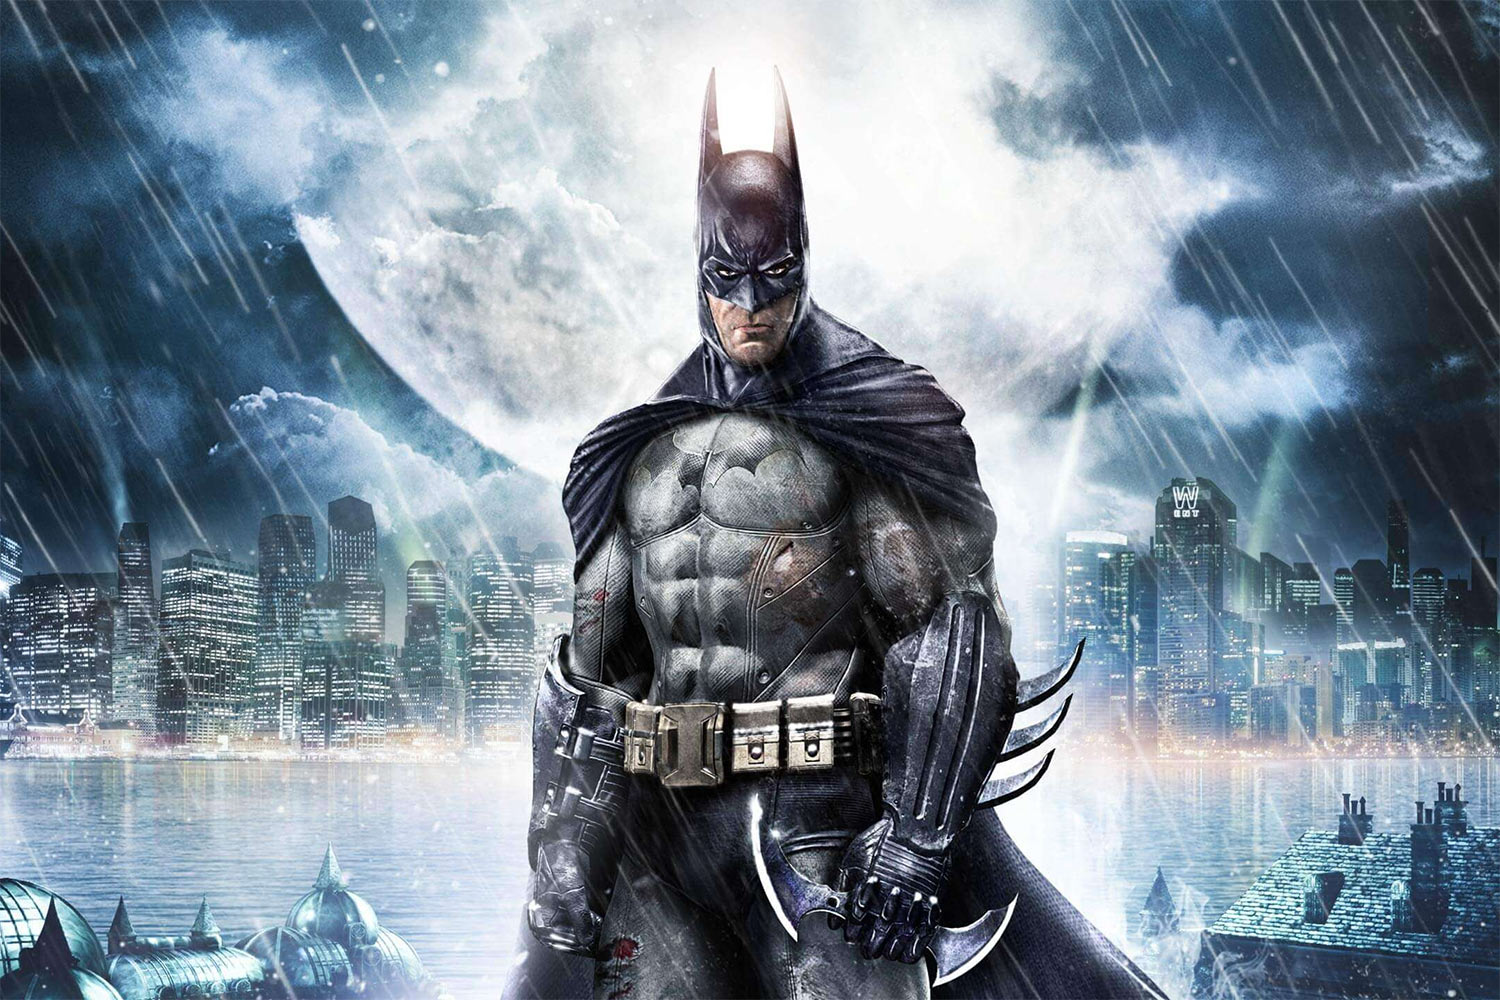 Batman: Arkham City Walkthrough 3. Joker's Trap